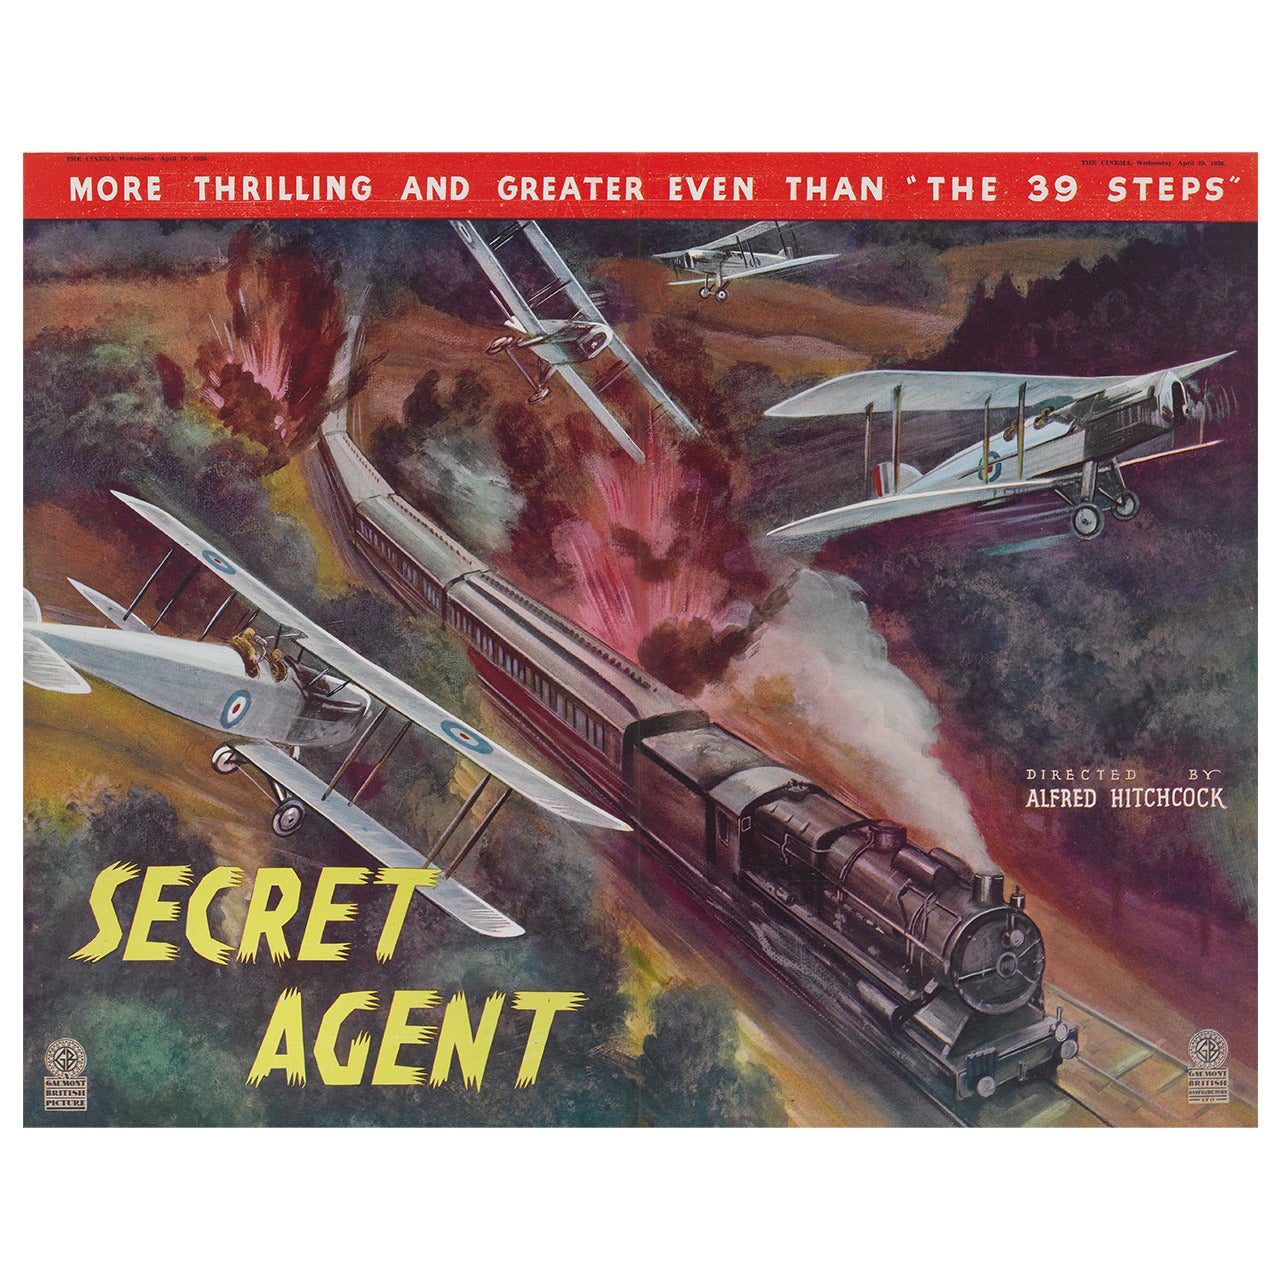 "Secret Agent" Original British Advertisment Poster For Sale